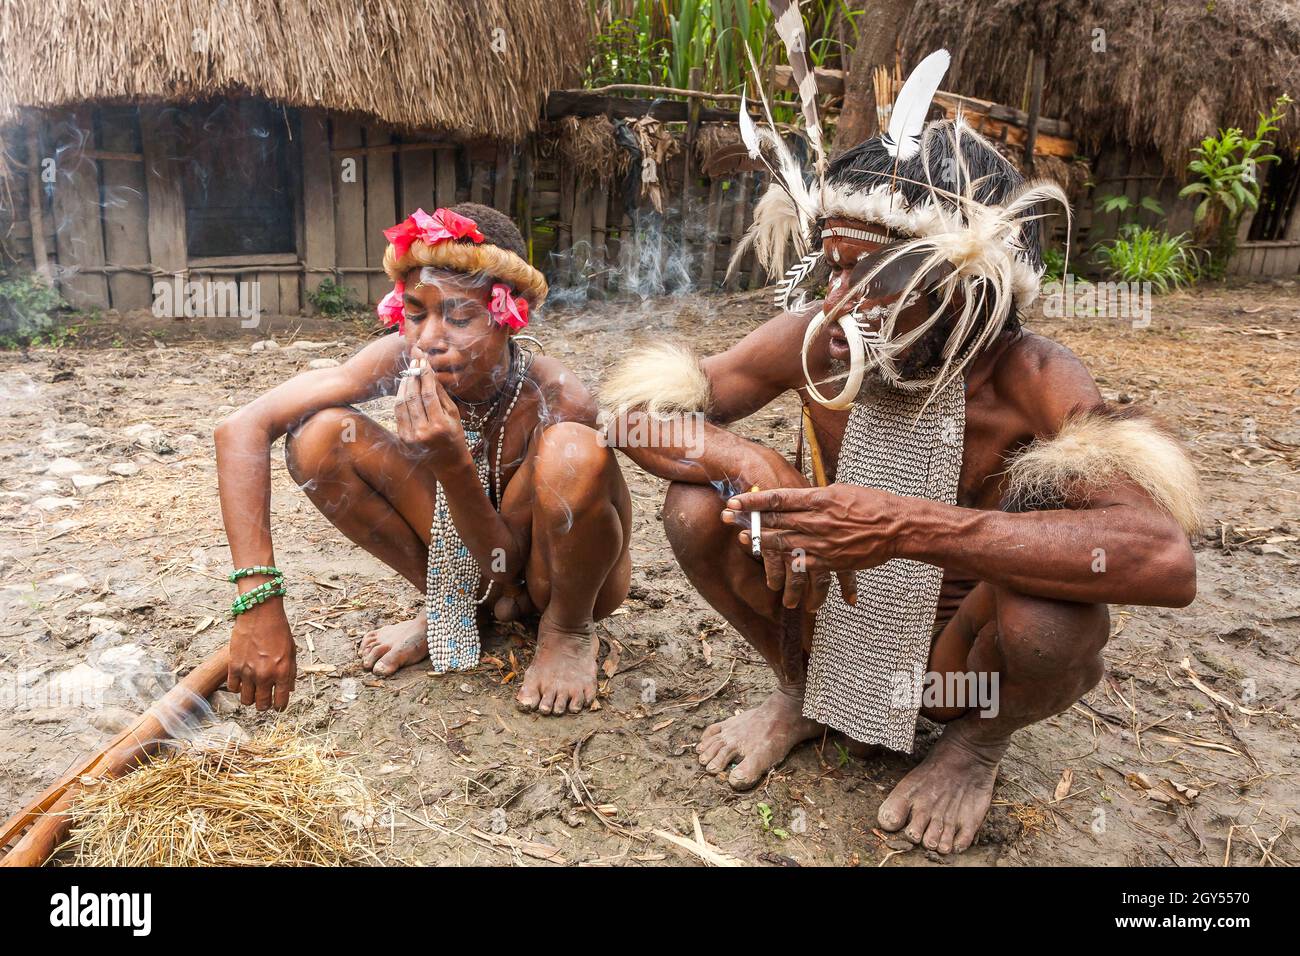 Wamena, Indonesien - 9. Januar 2010: Zwei Männer des Dani-Stammes rauchten die Zigaretten im Dorf Wamena. Stockfoto